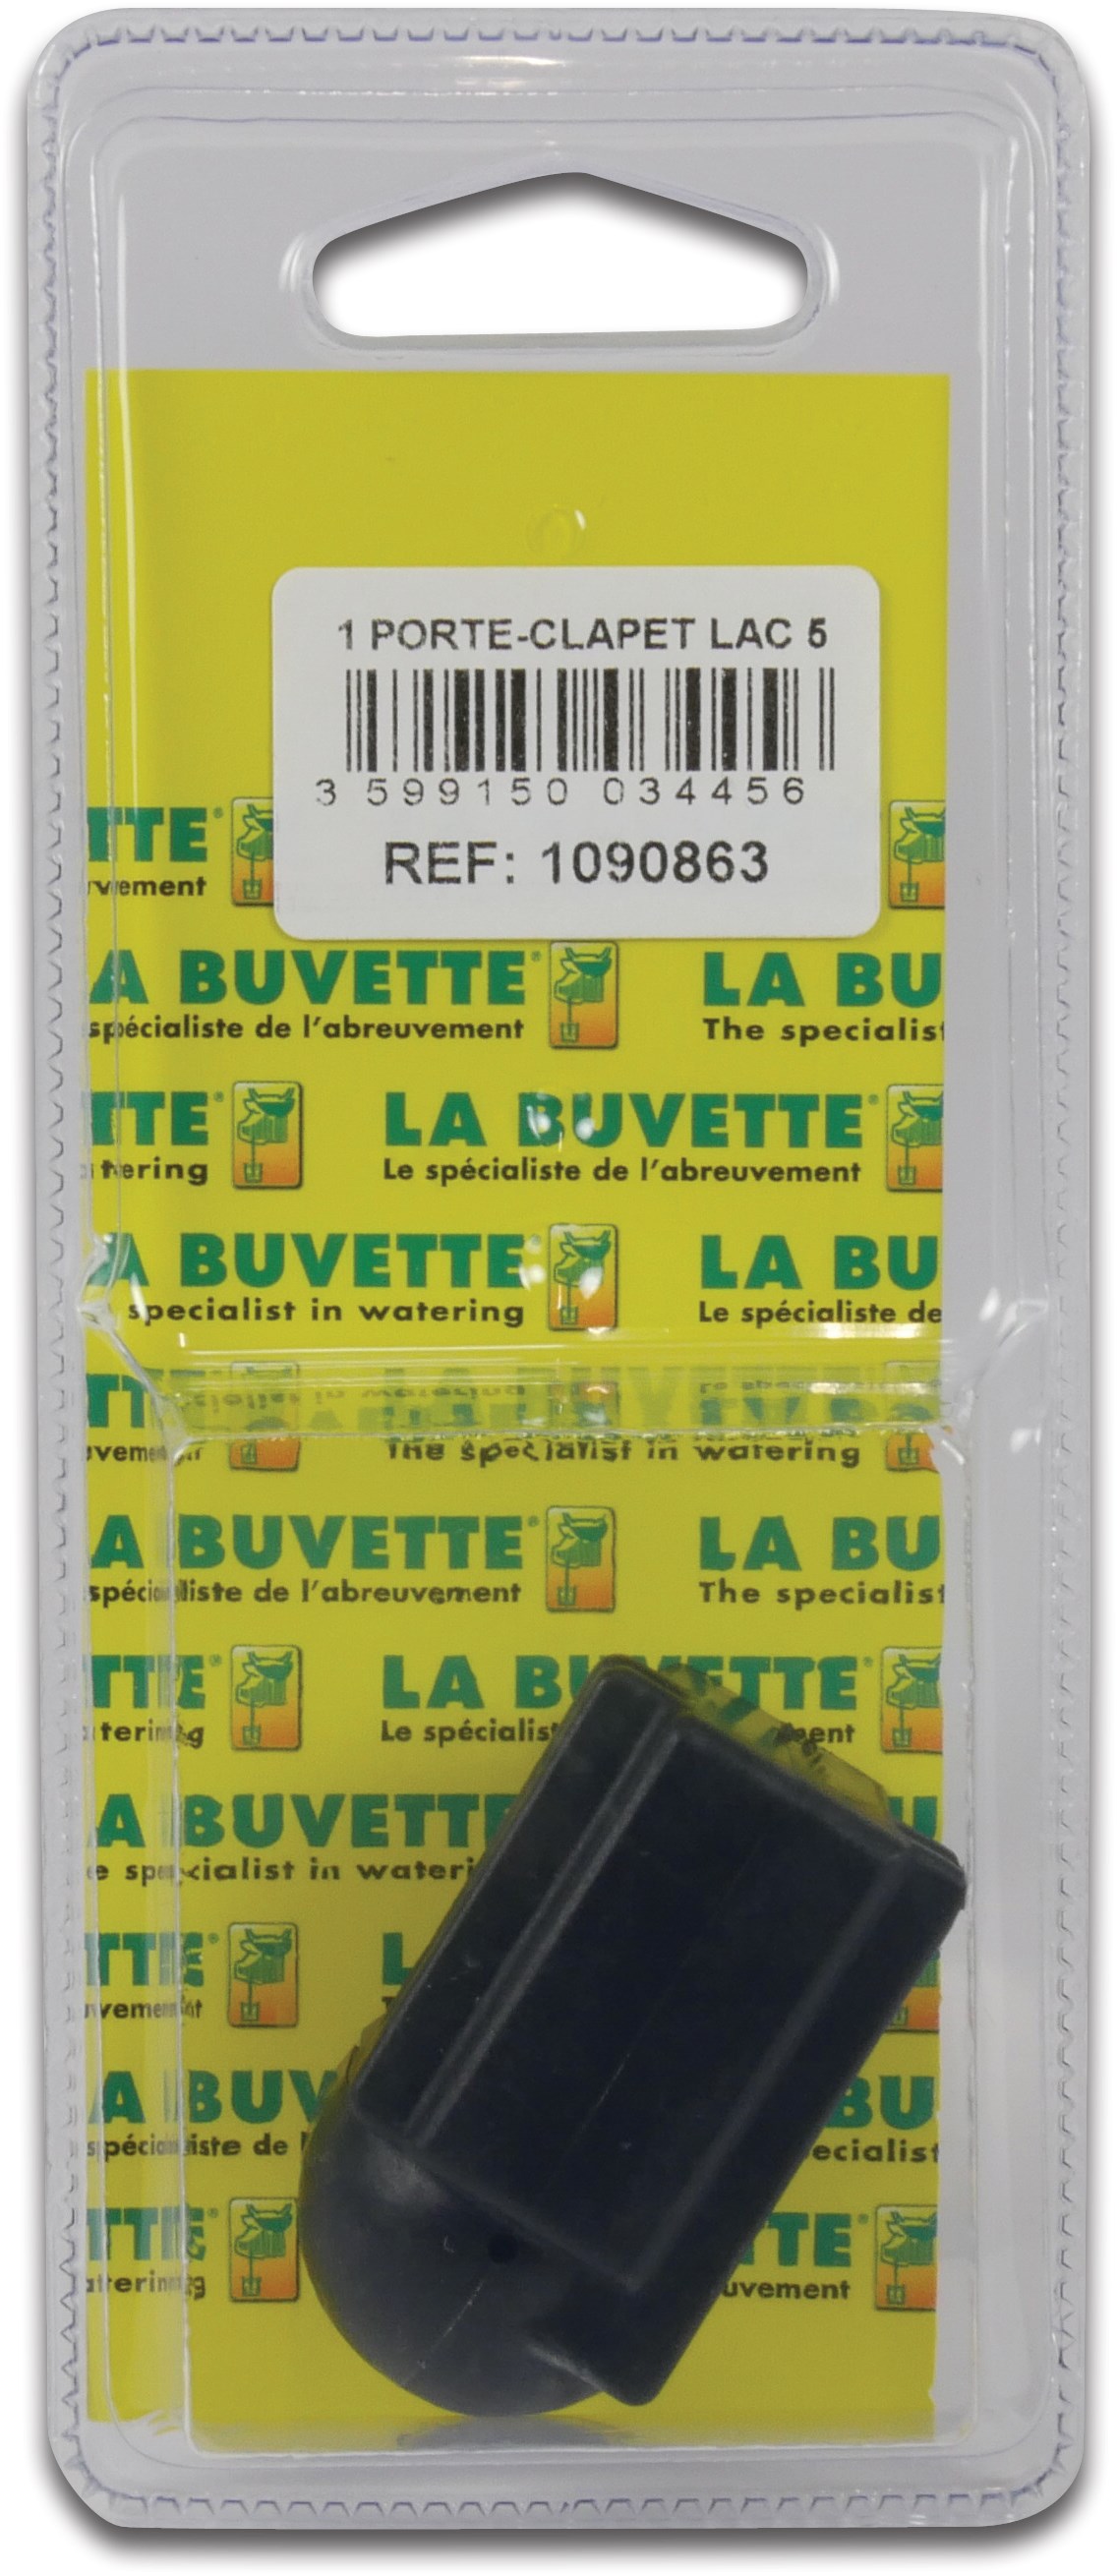 La Buvette Valve body Lac 5 blister pack